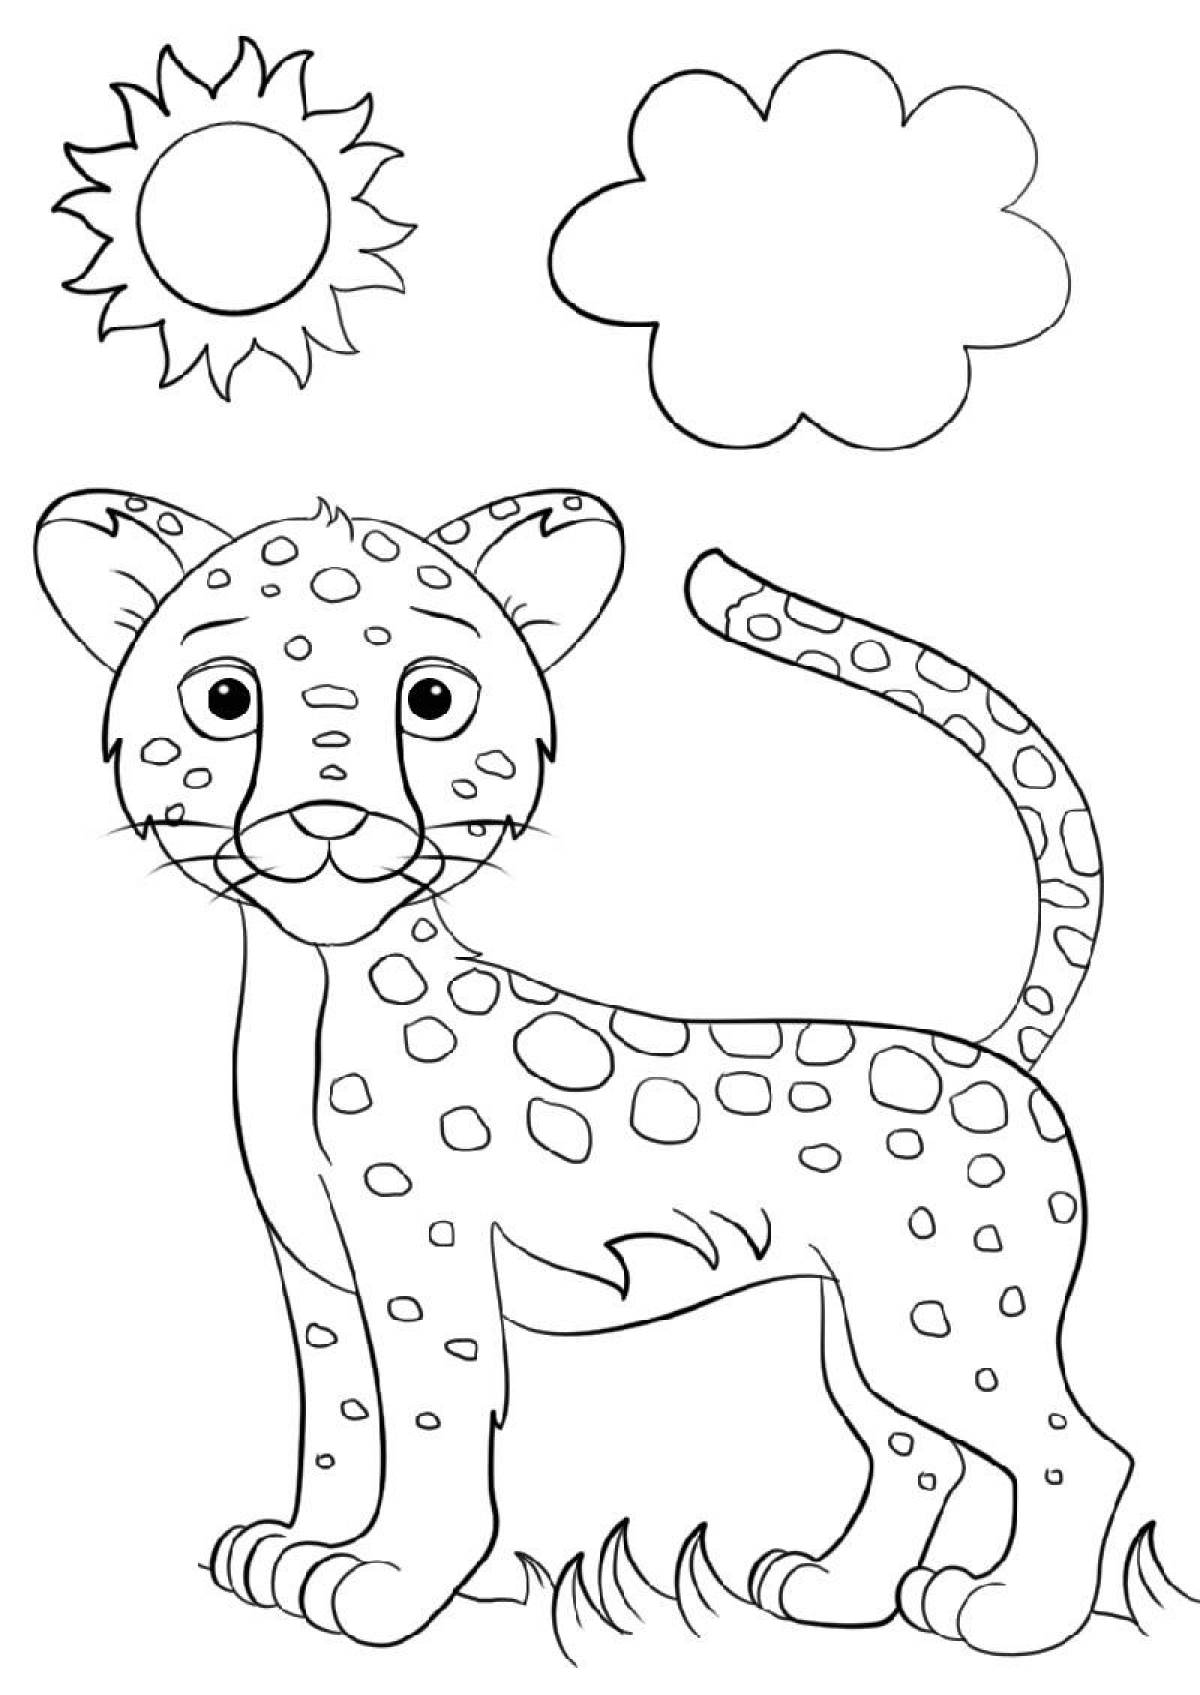 Adorable jaguar coloring page